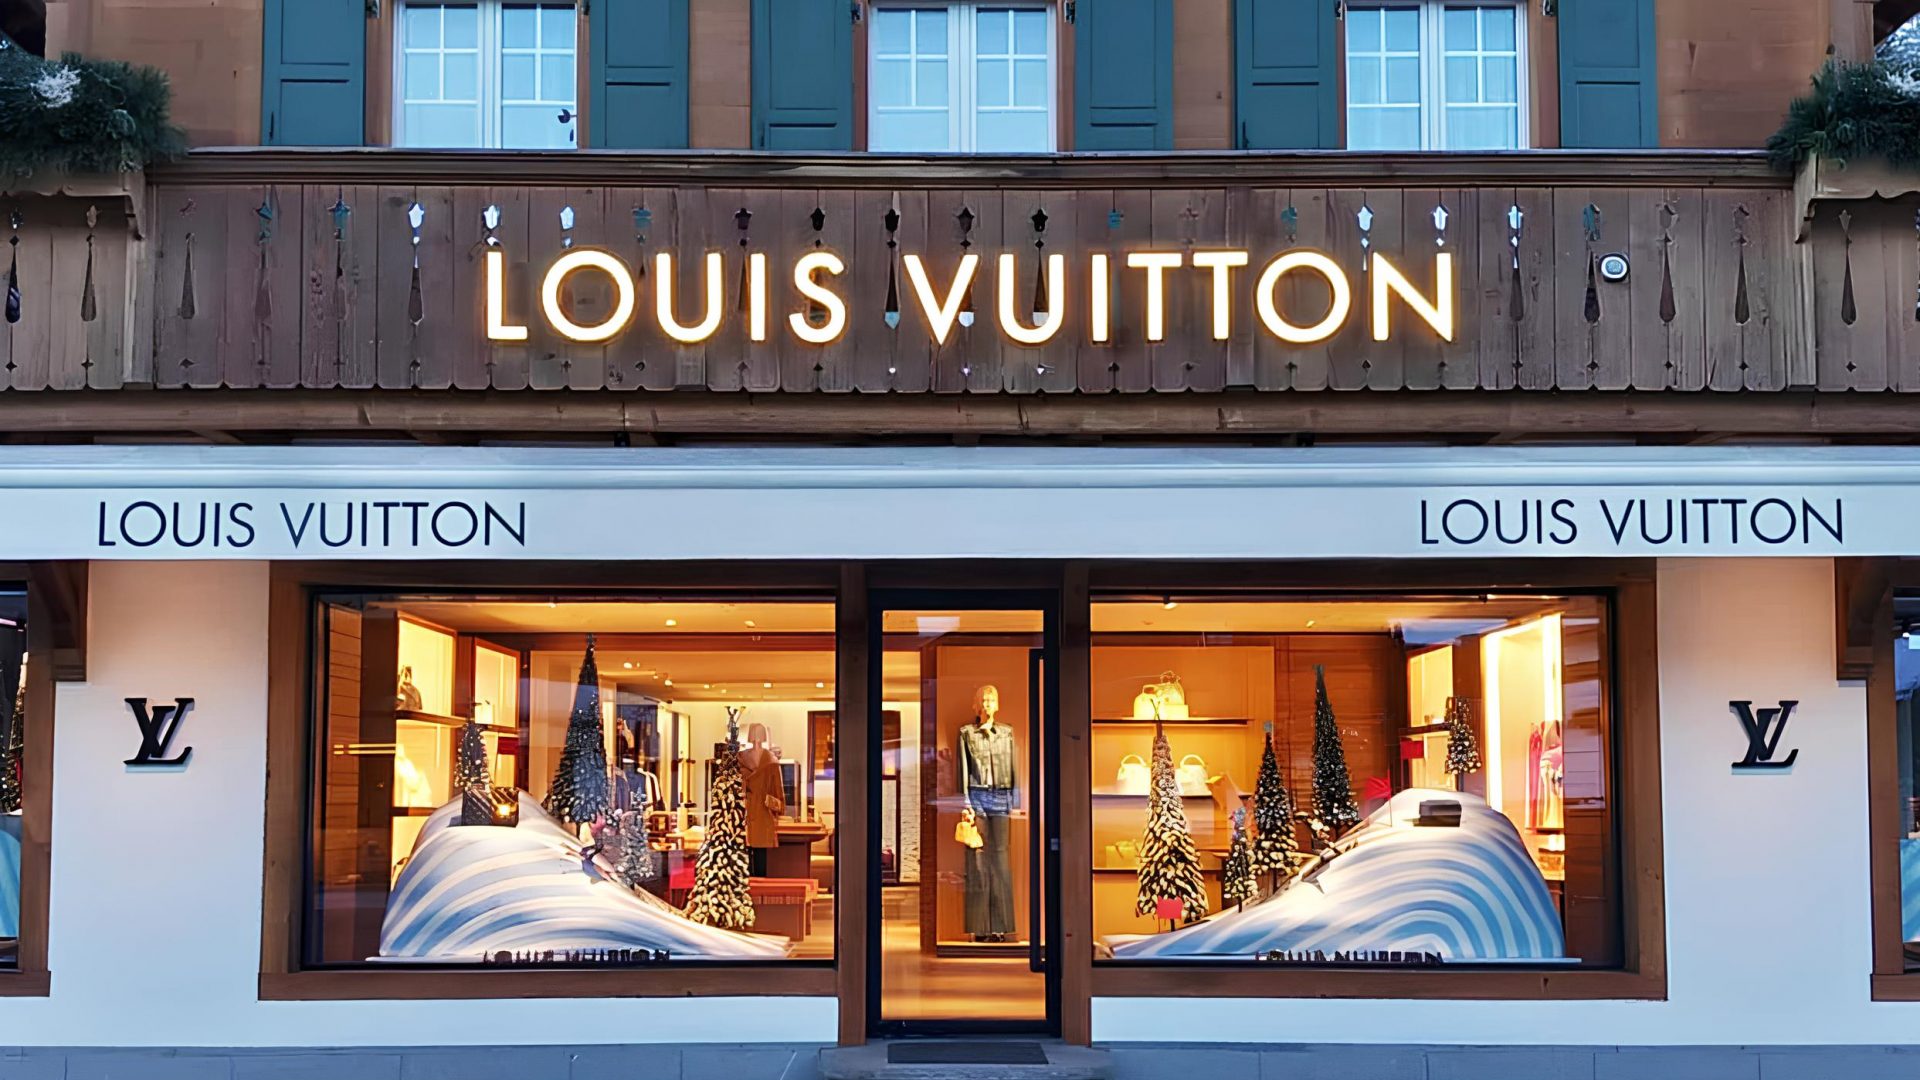 Louis Vuitton SkiResort_Pardgroup